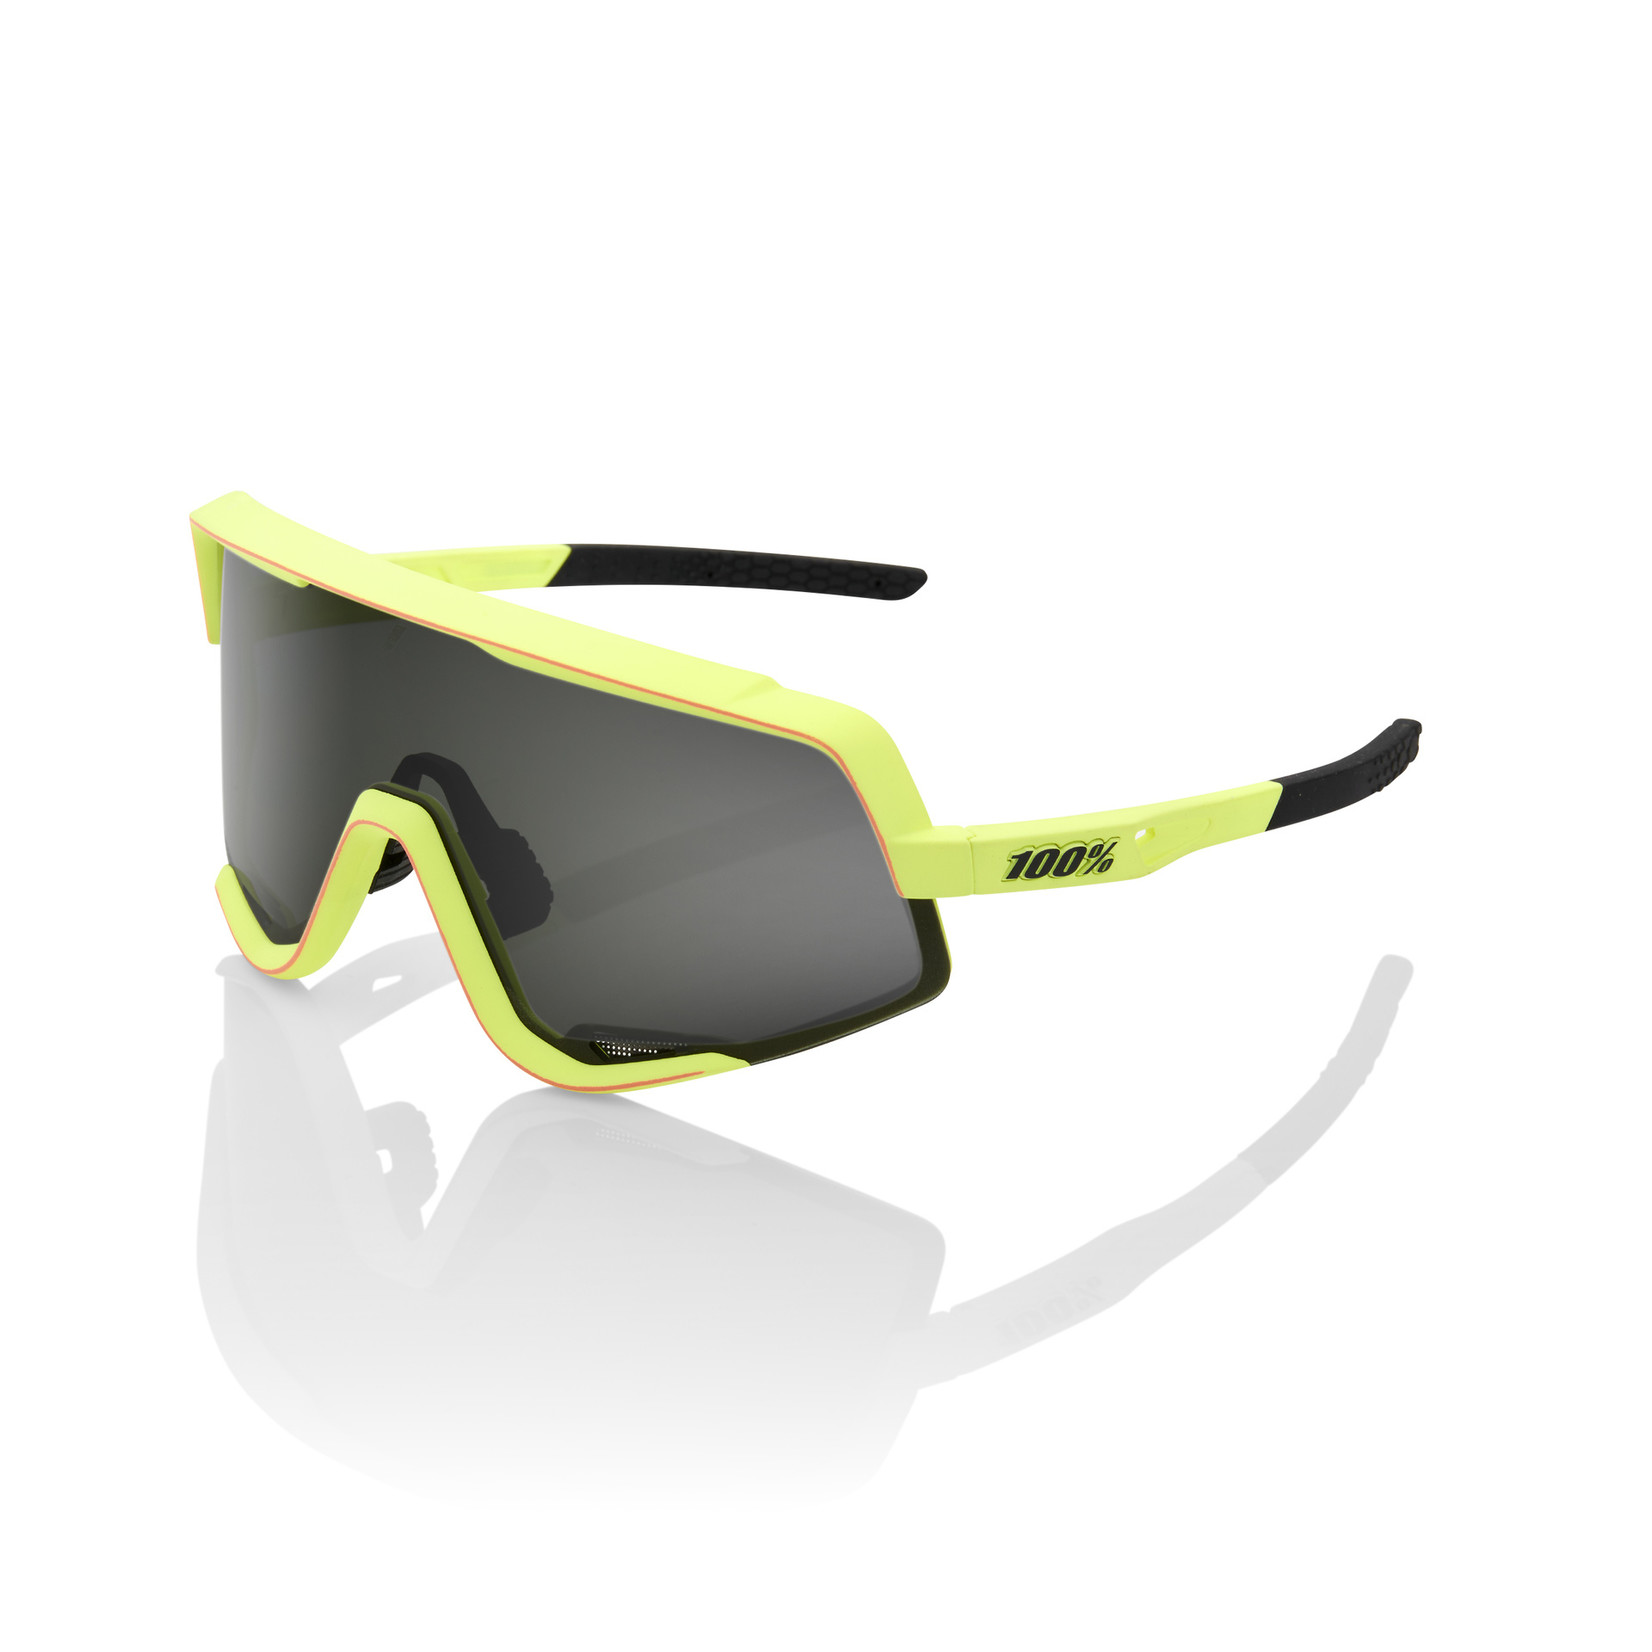 1 100% Glendale Sunglasses Soft Tact Washed Out Neon Yellow - Smoke